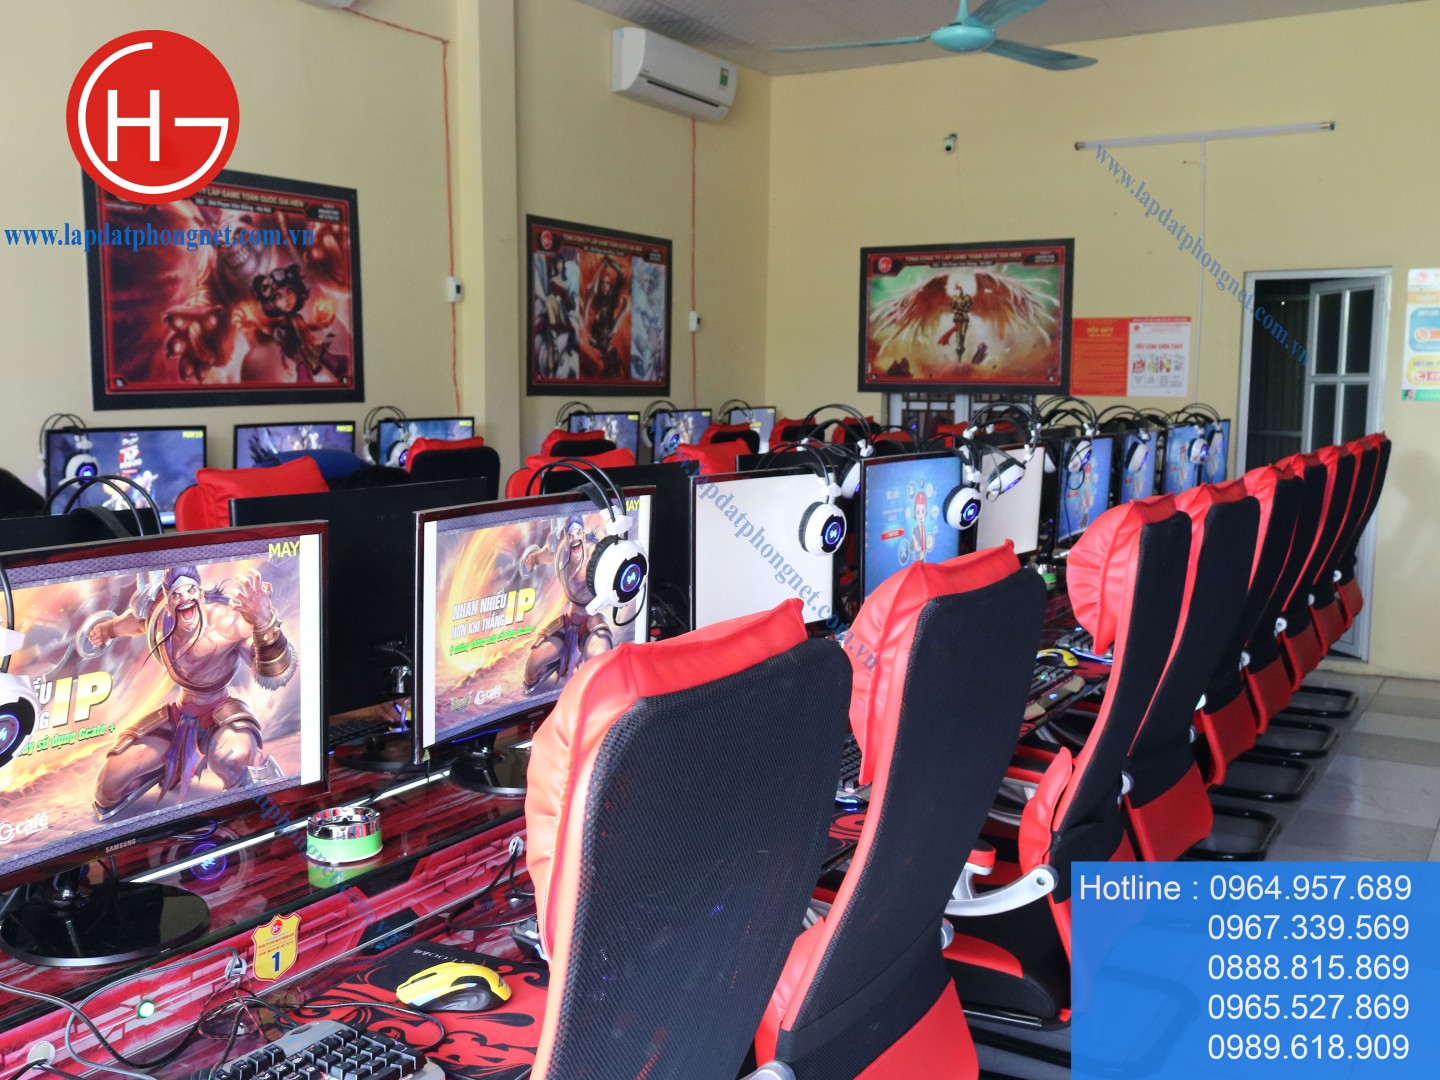 Lắp đặt phòng game giá rẻ cho anh Ngọc tại Mê Linh, Hà Nội